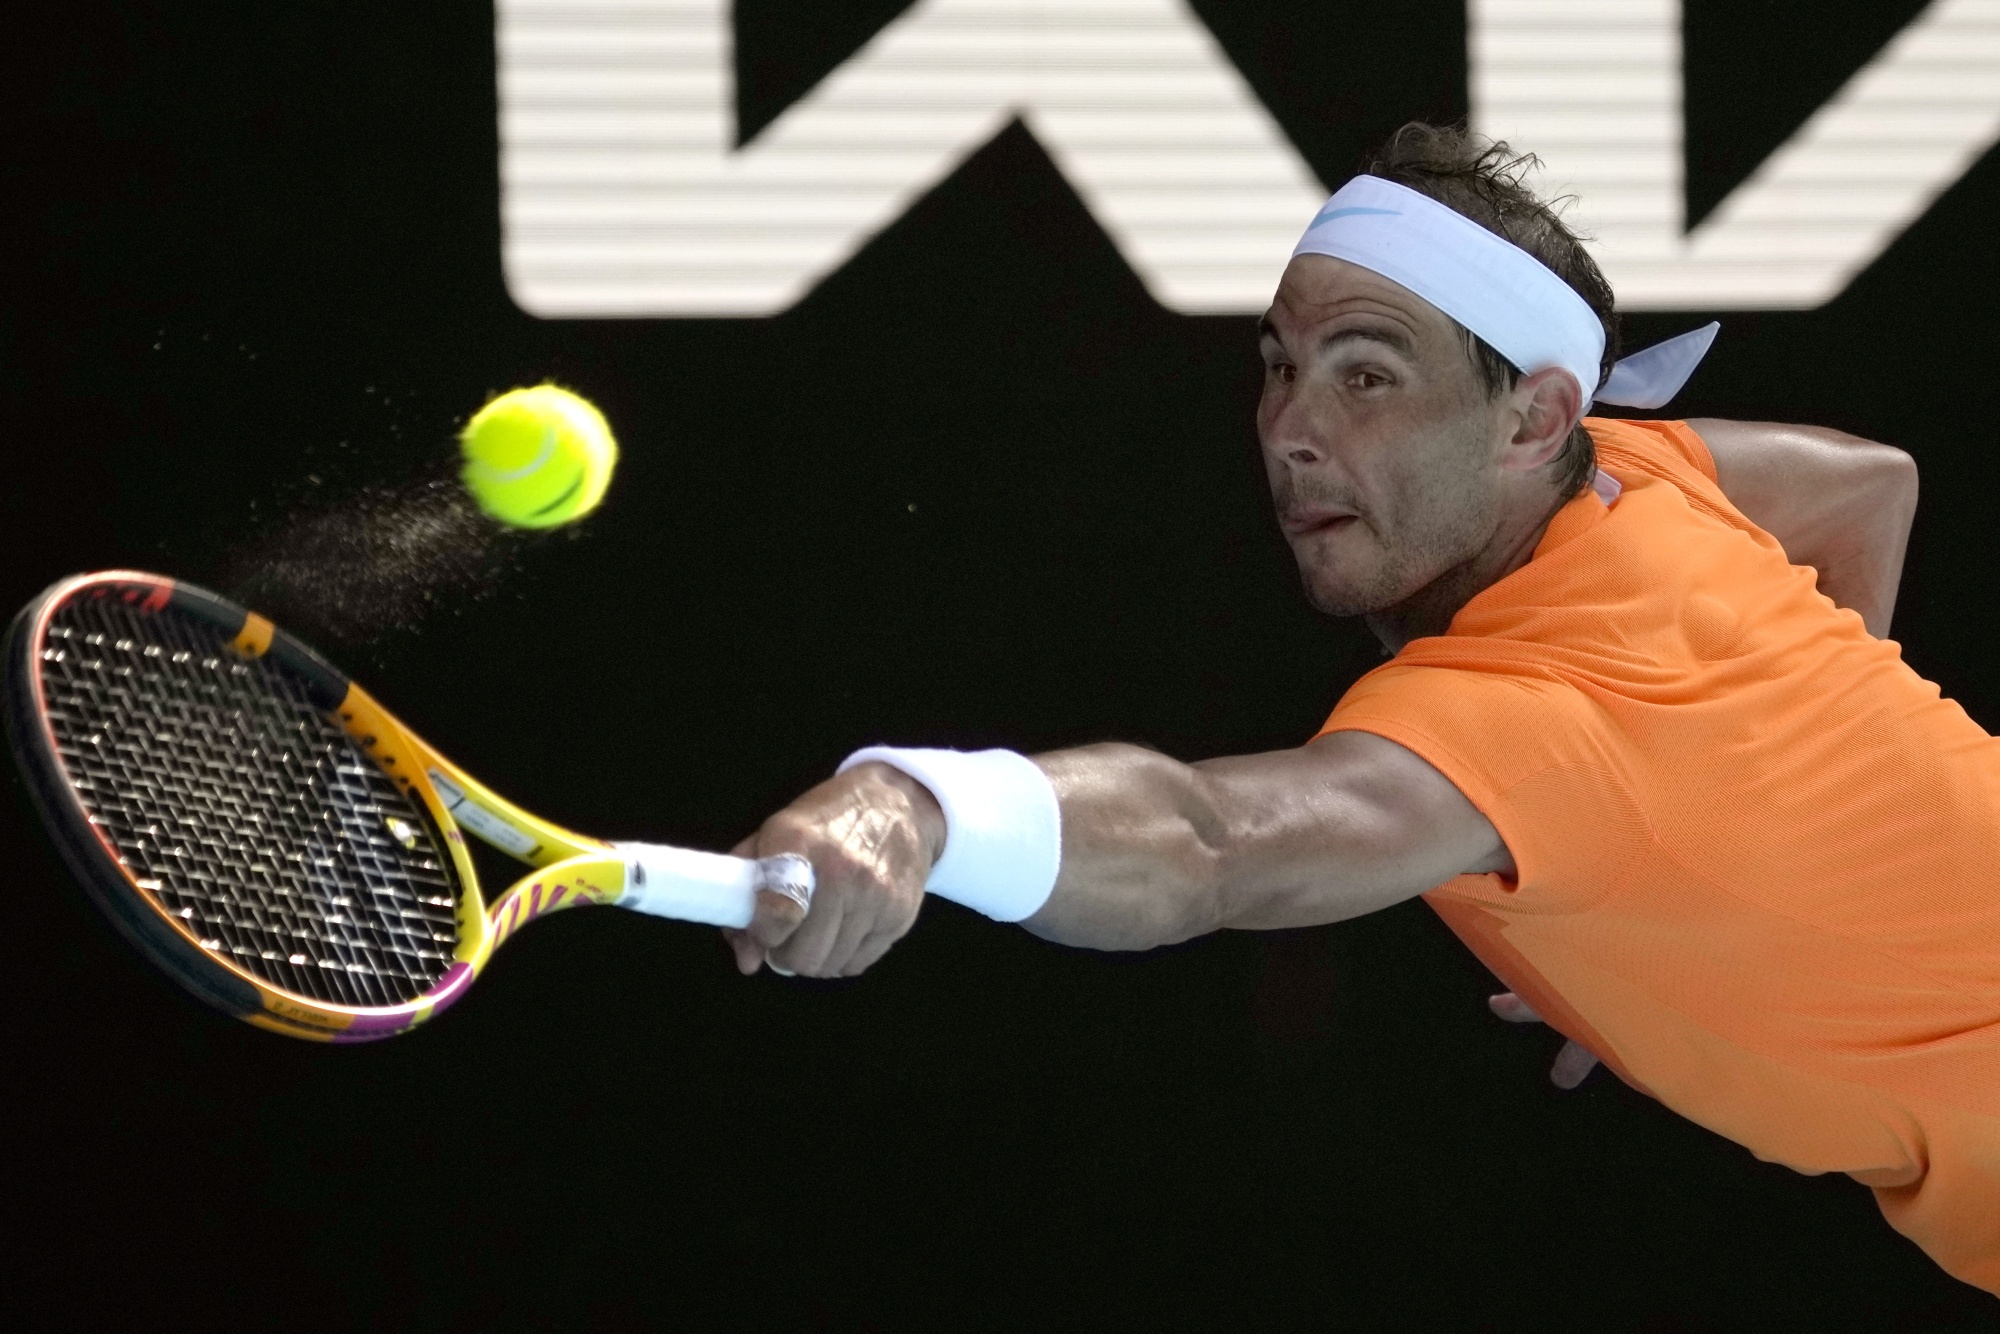 Iga Swiatek handles Jule Niemeier test in Australian Open first round